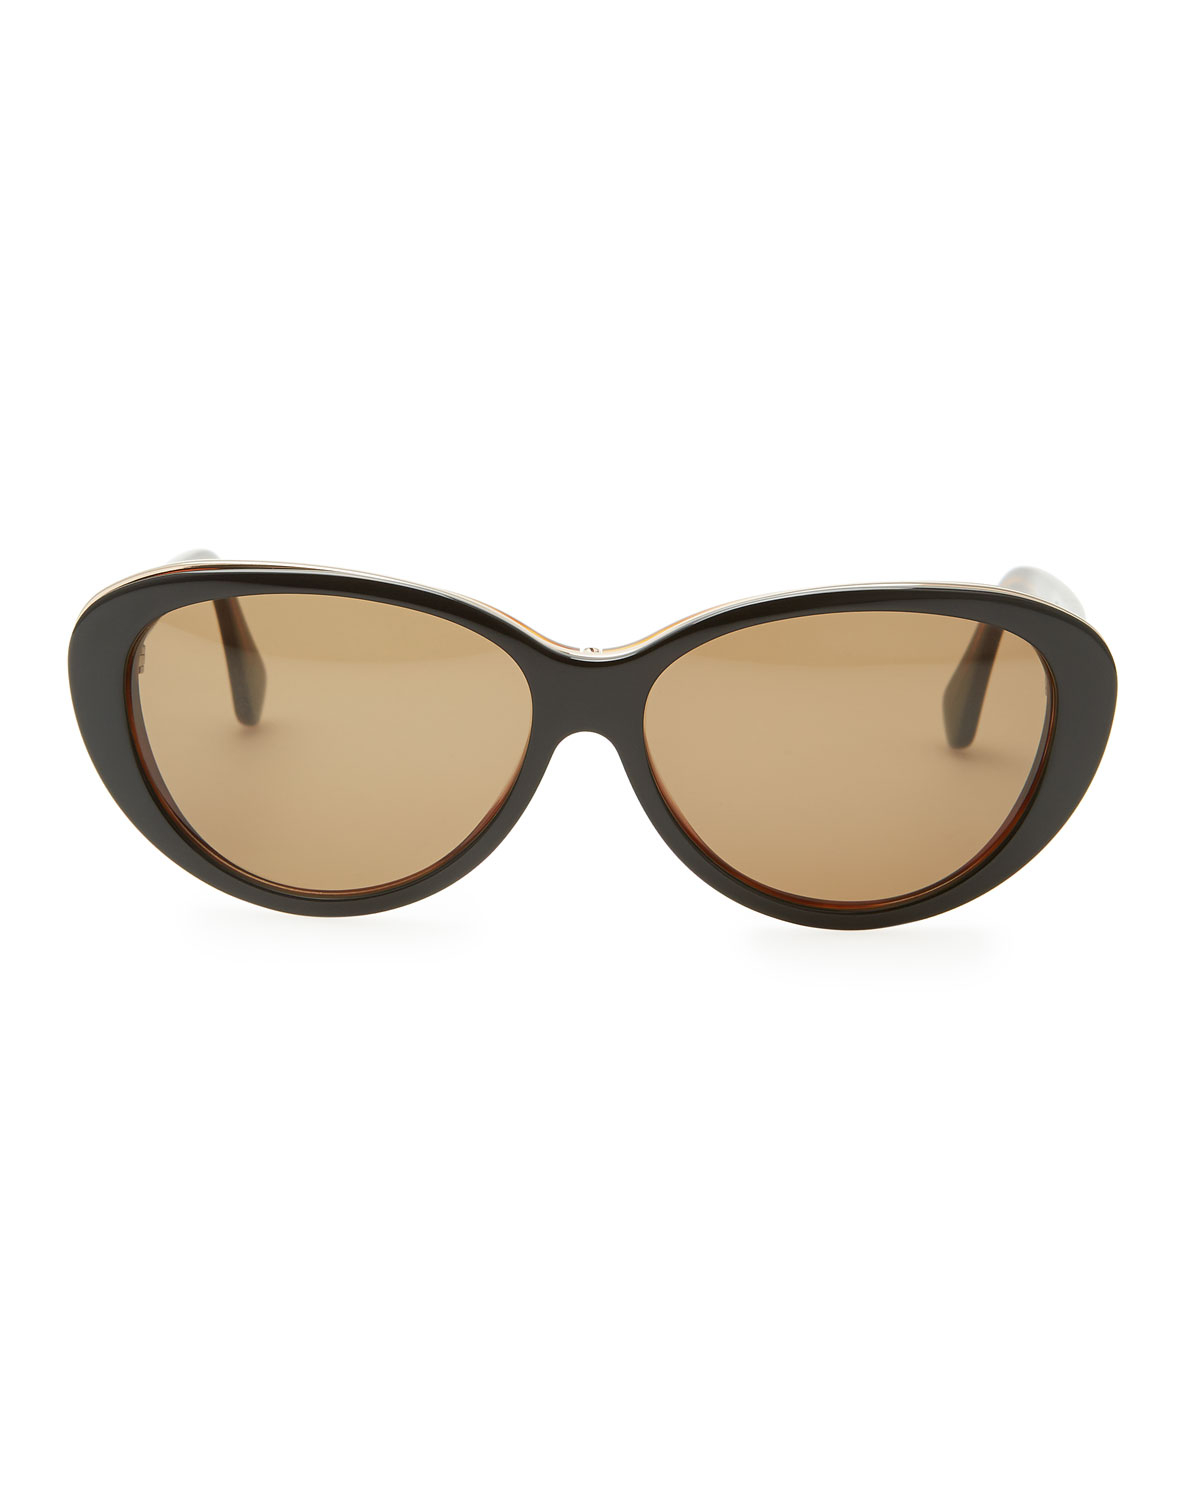 Balenciaga Oval Cat-Eye Sunglasses in Black | Lyst